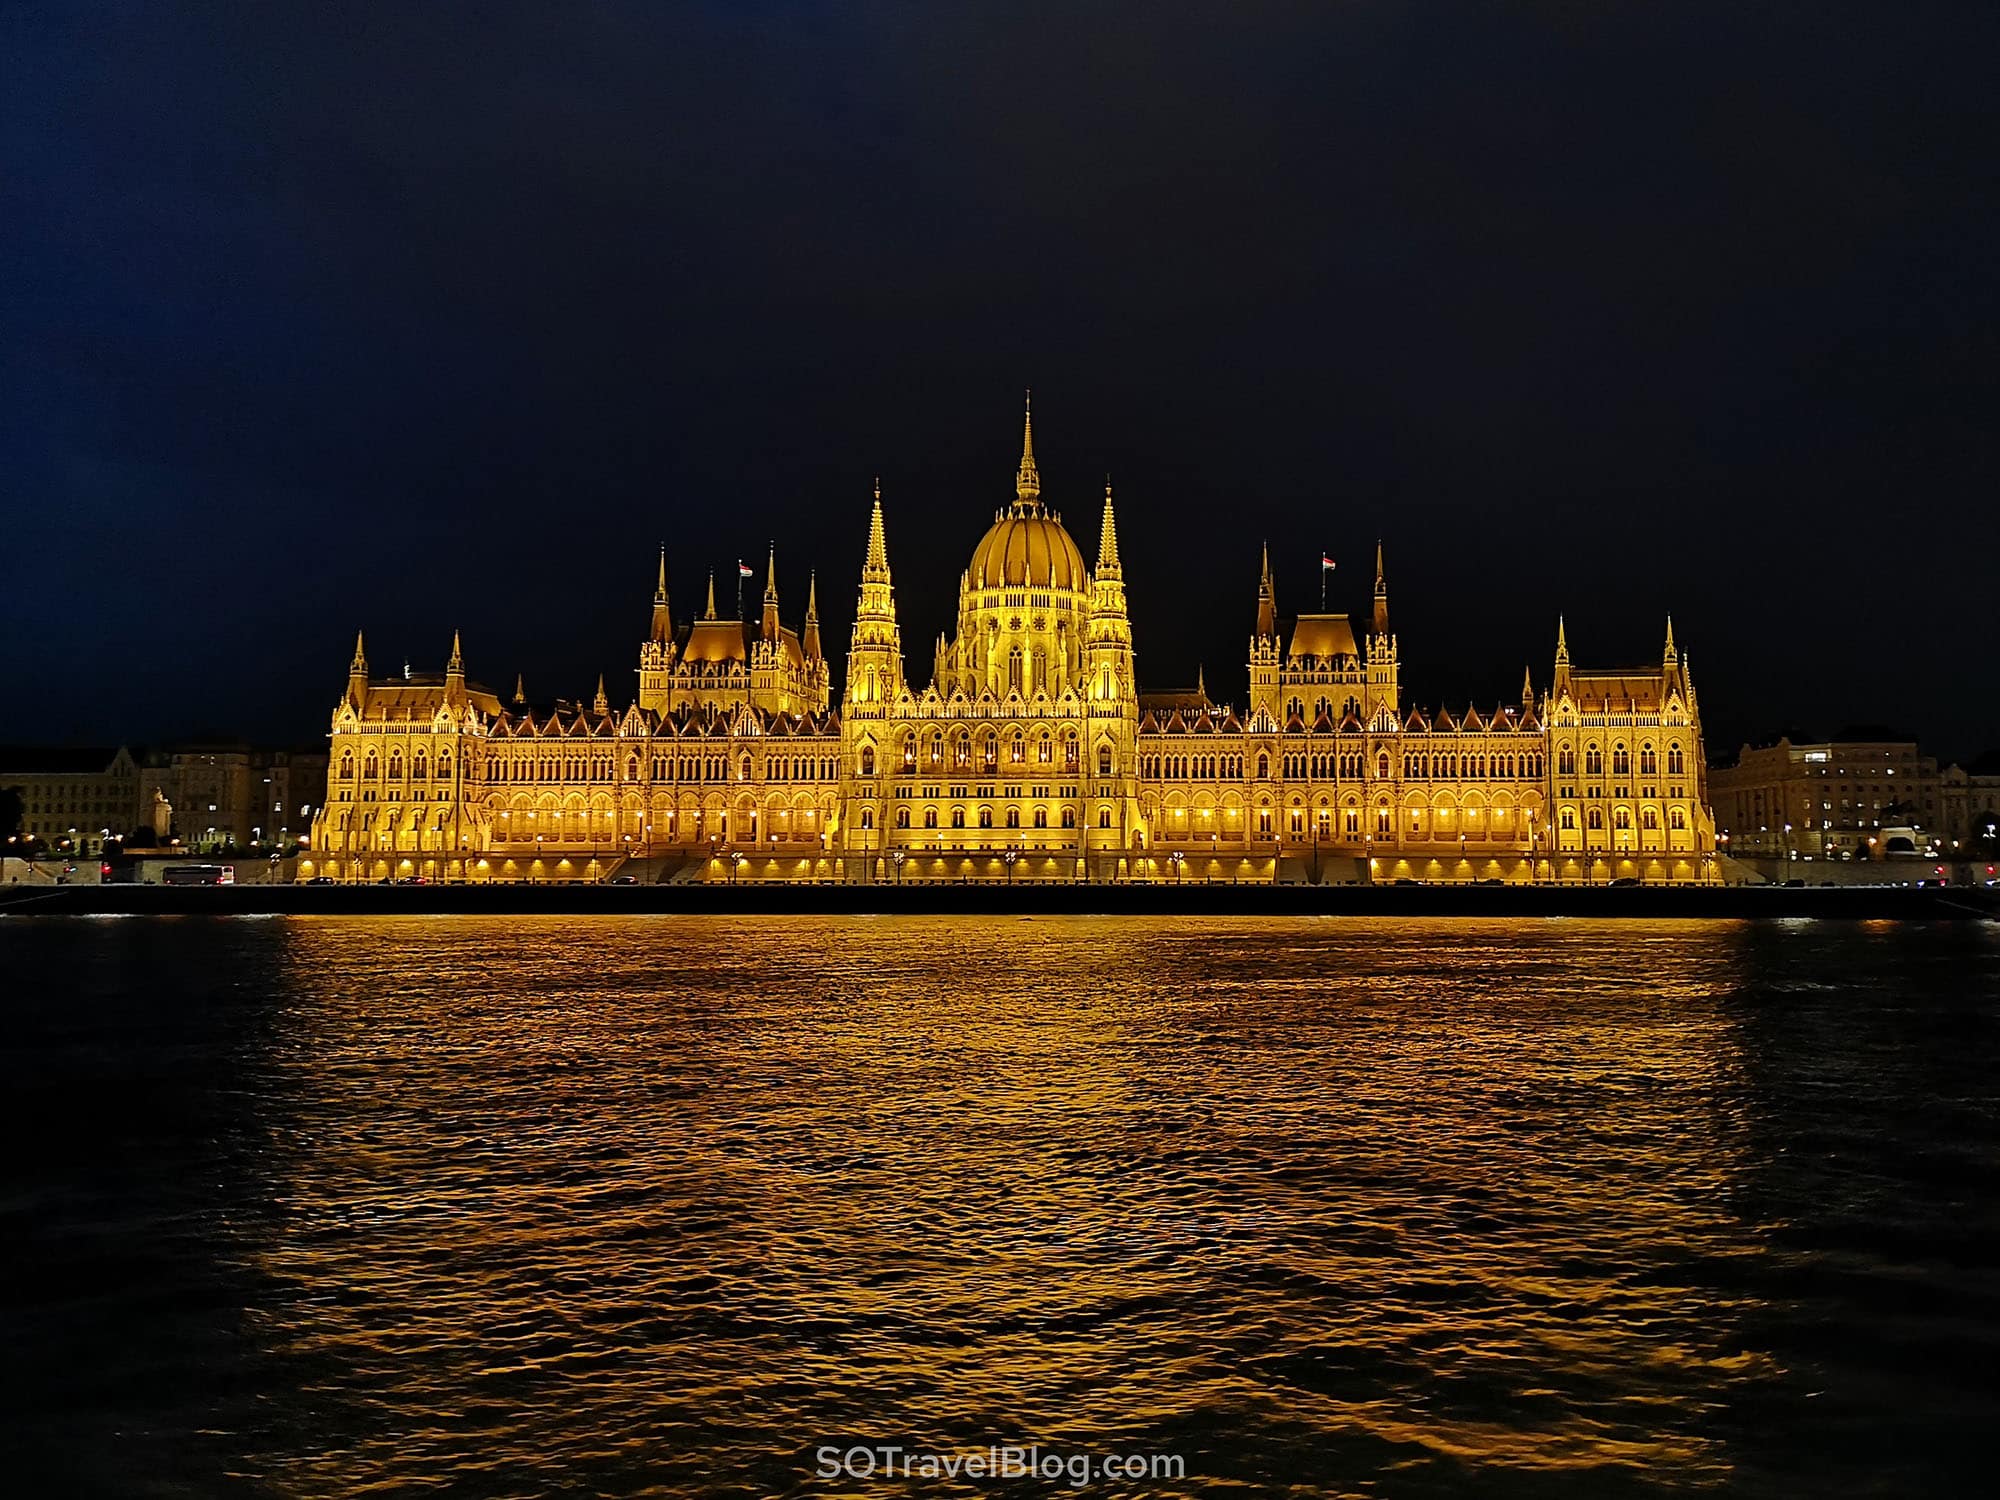 אטרקציות בבודפשט - בניין הפרלמנט